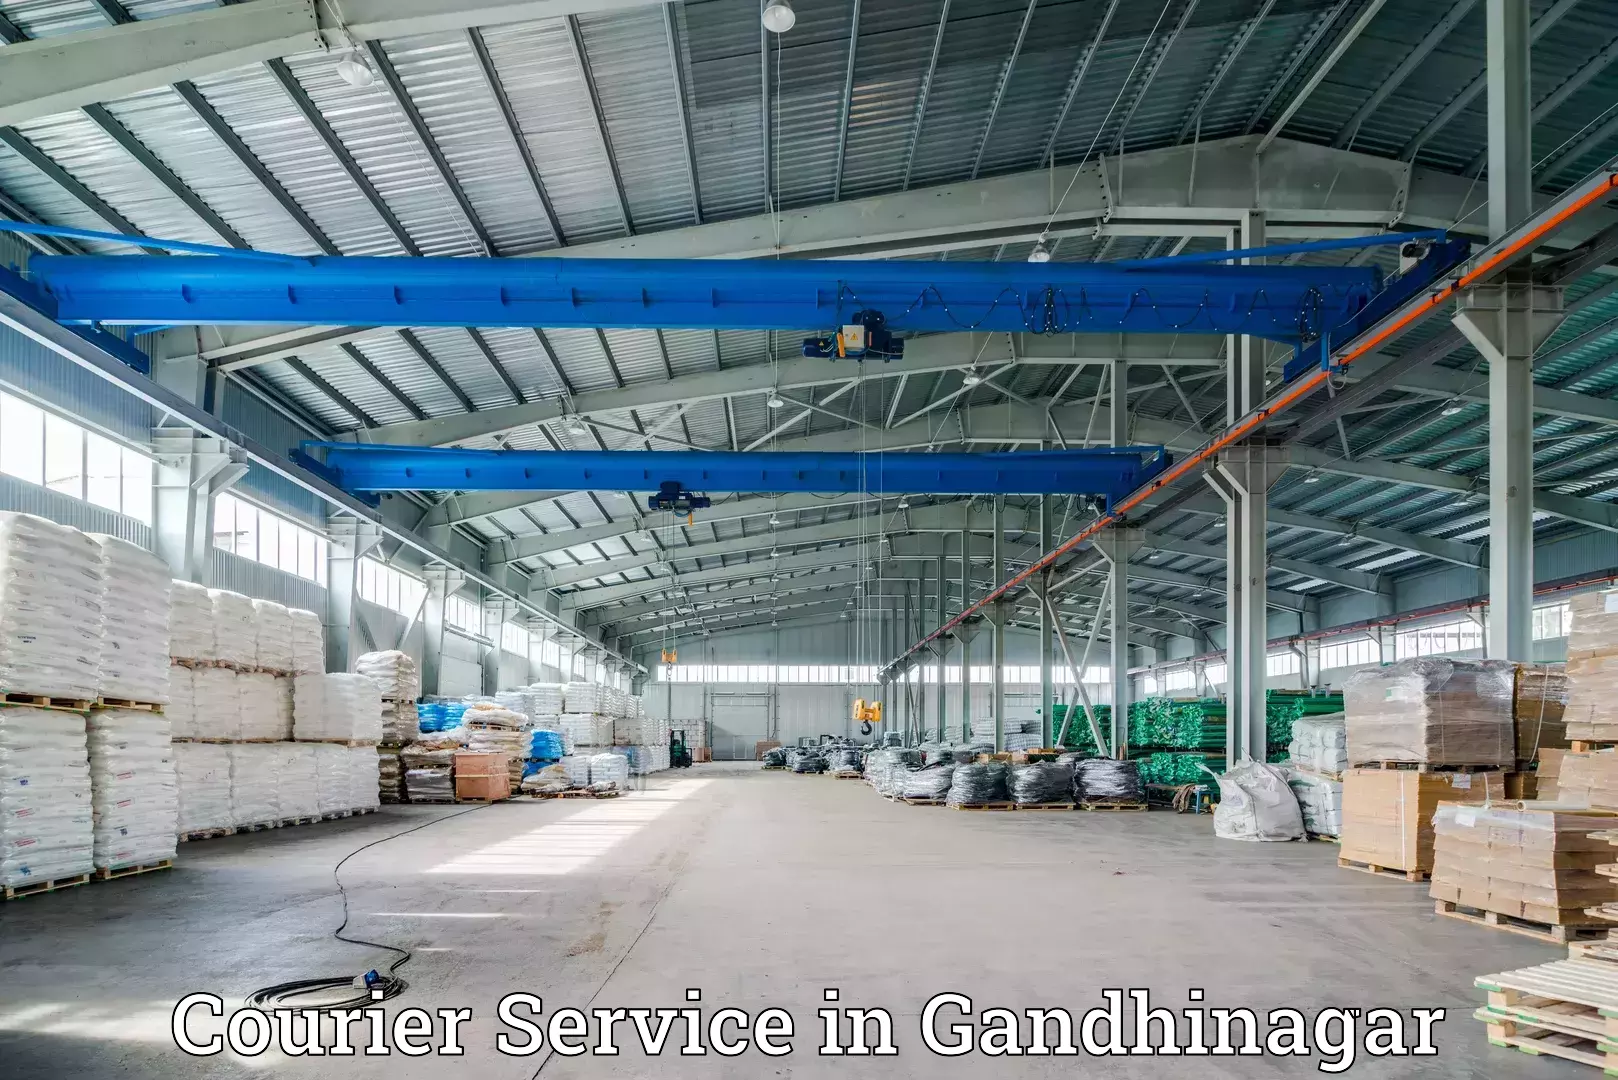 Efficient freight service in Gandhinagar